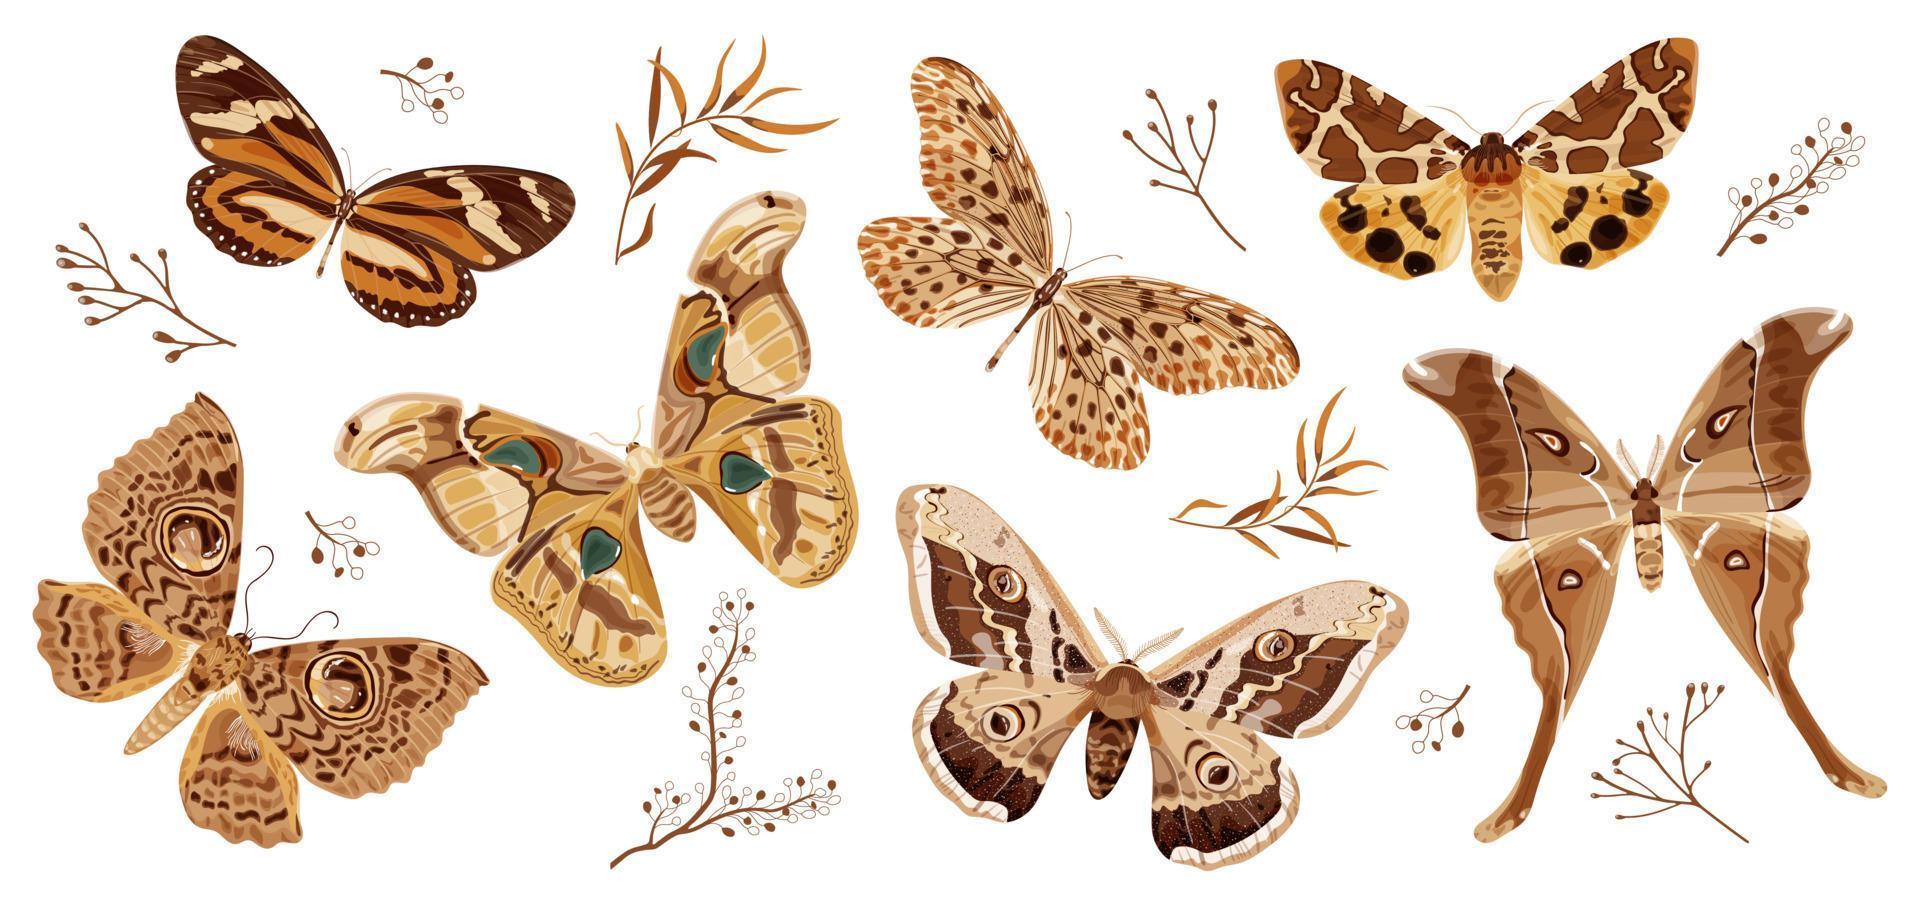 uma coleção de borboletas e mariposas pintadas de marrom. a mariposa é um símbolo místico e talismã. ilustração em vetor estoque isolada no fundo branco.